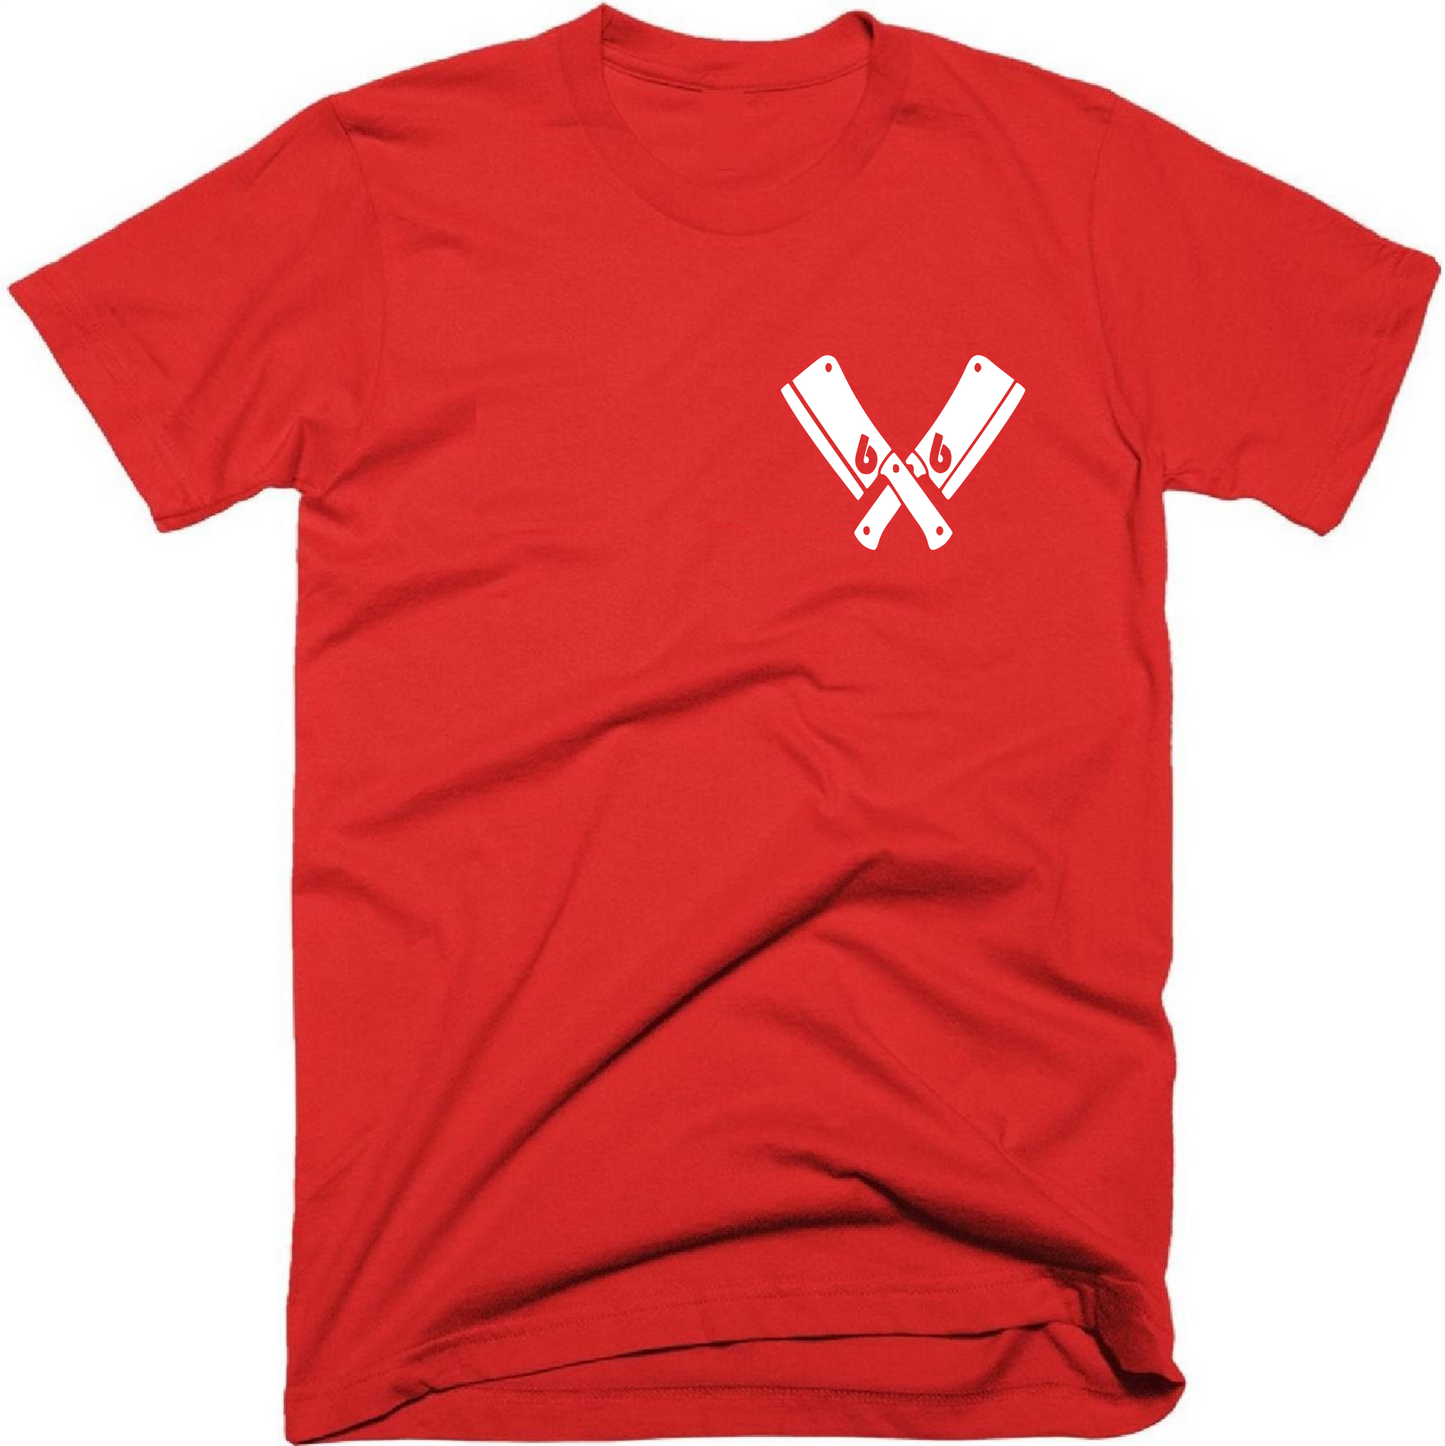 Martinez the Butcher Subtle Chest Design T-Shirt